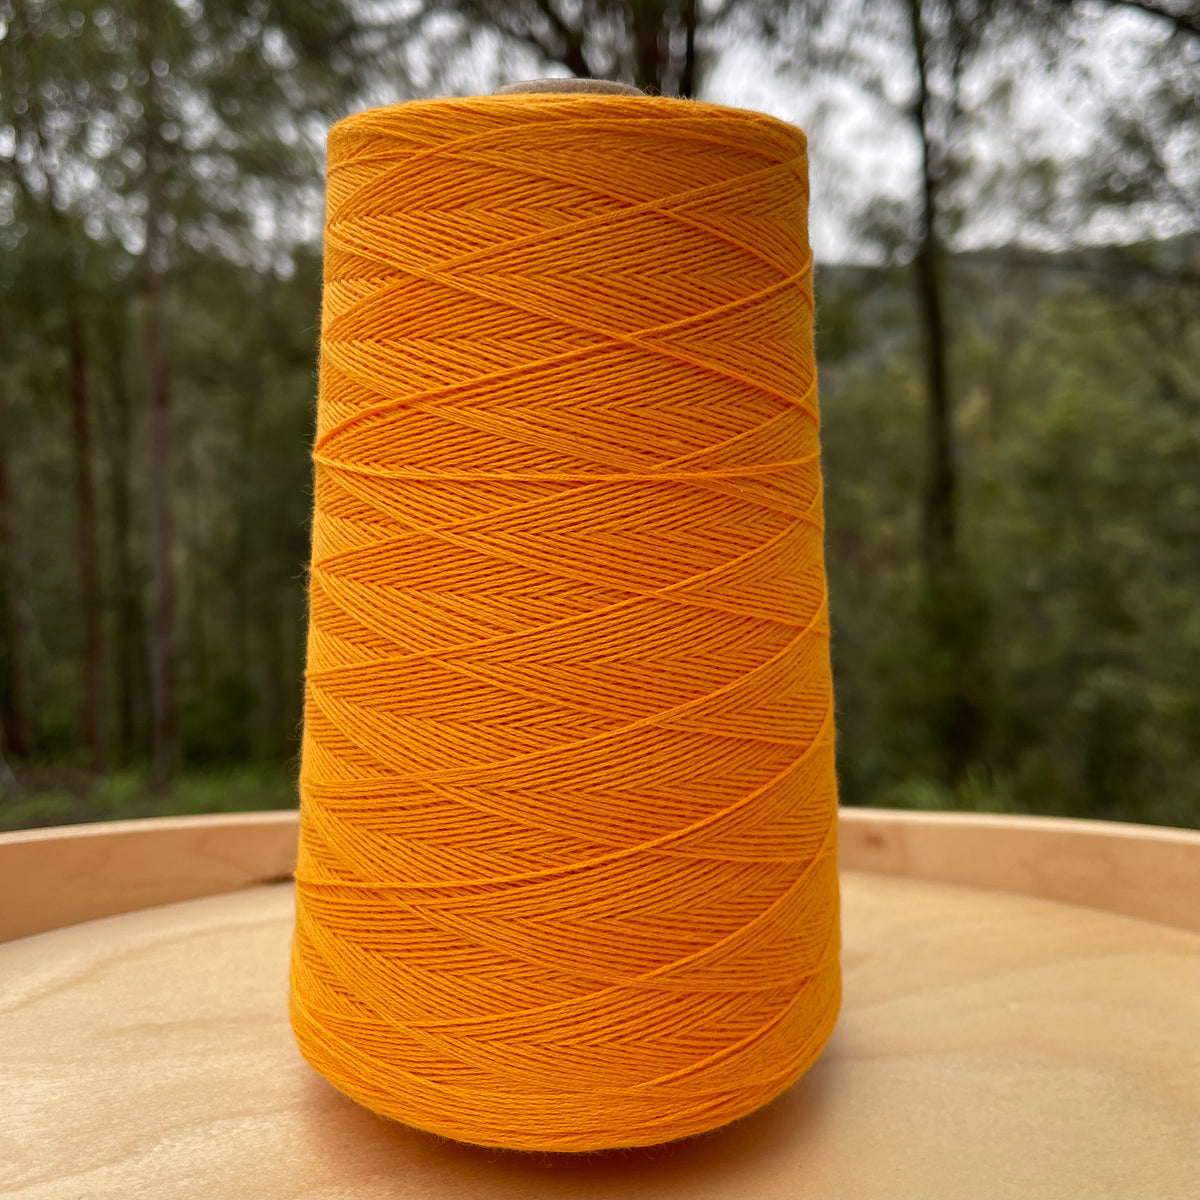 Ada Fibres large australian cotton cones - yellow orange